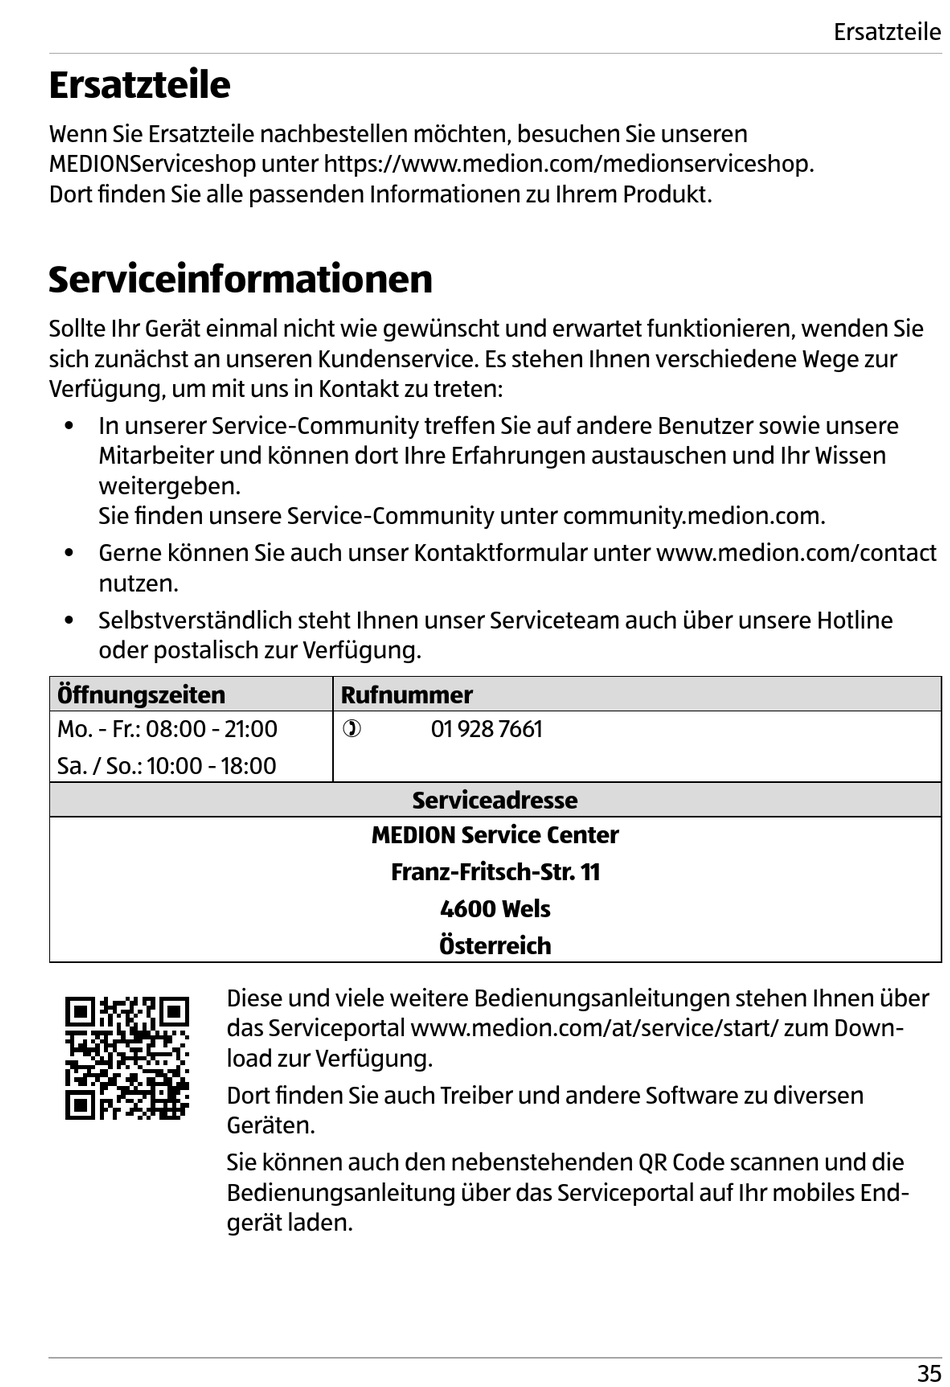 Ersatzteile; Serviceinformationen - Nordfrost MD 37274 Bedienungsanleitung  [Seite 35]